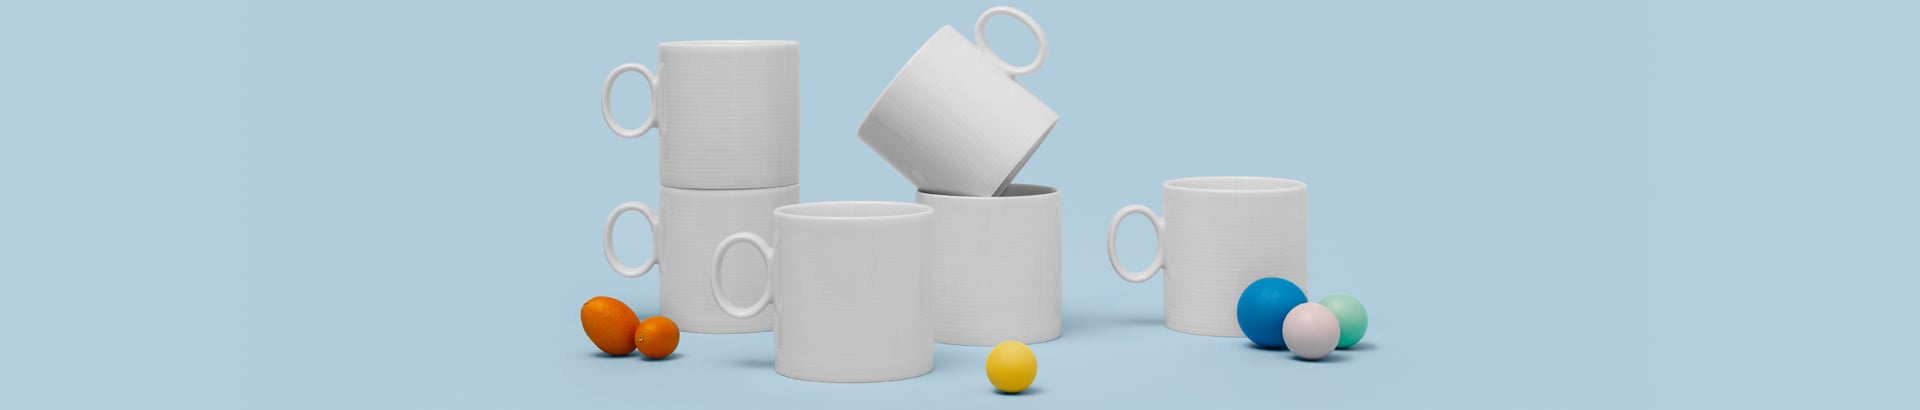 Coffee cups & mugs